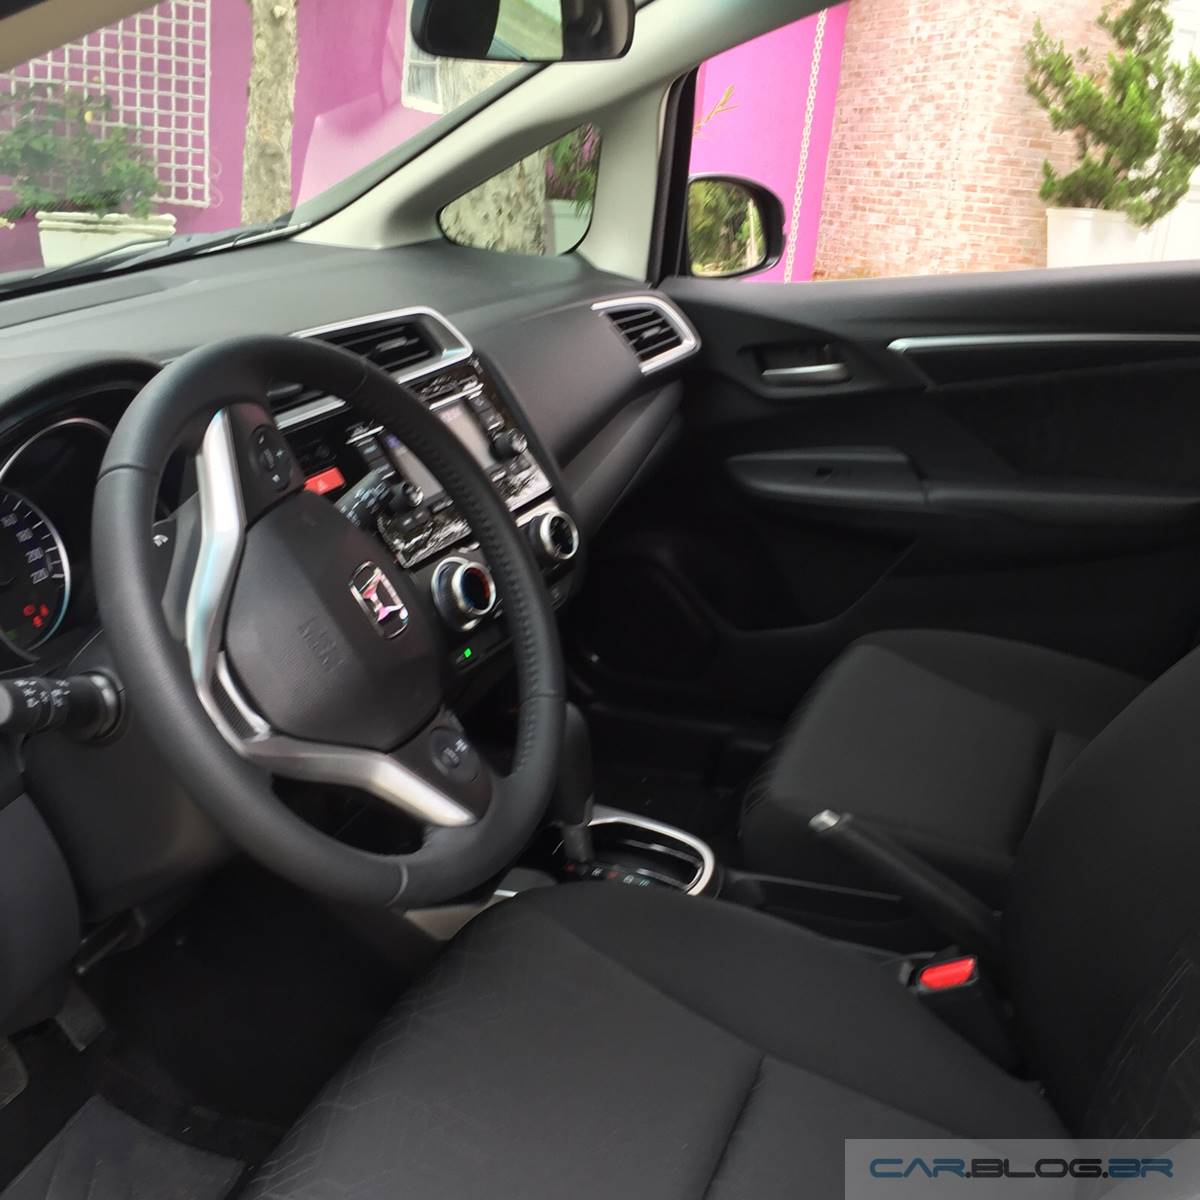 Honda FIT EX 2016 - teste de longa duração - interior